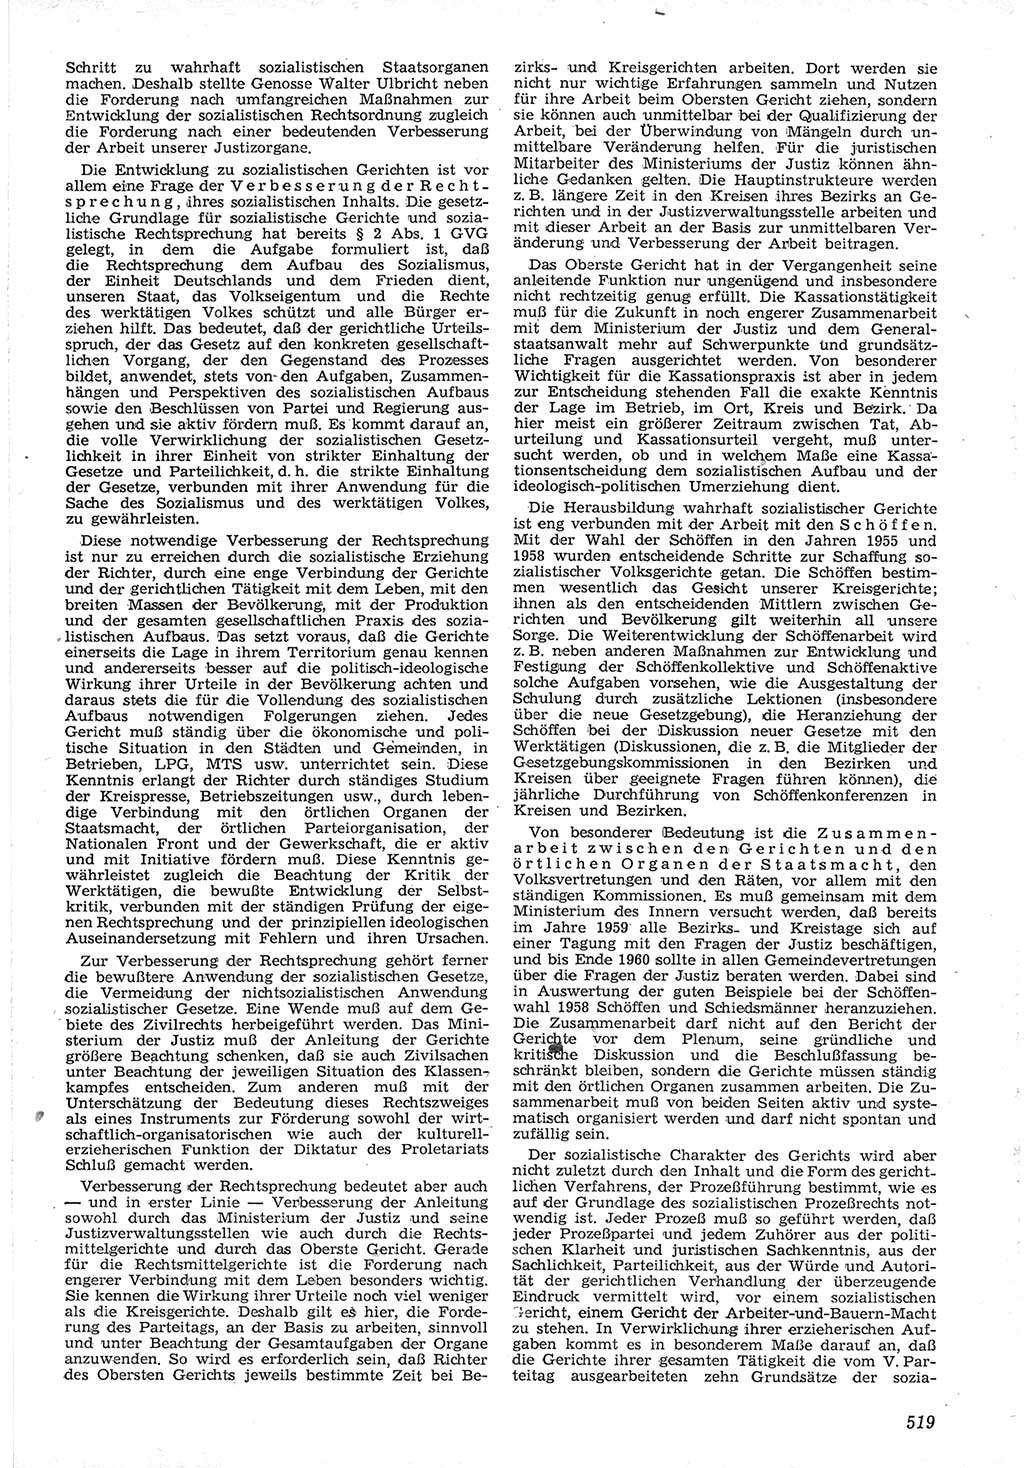 Neue Justiz (NJ), Zeitschrift für Recht und Rechtswissenschaft [Deutsche Demokratische Republik (DDR)], 12. Jahrgang 1958, Seite 519 (NJ DDR 1958, S. 519)